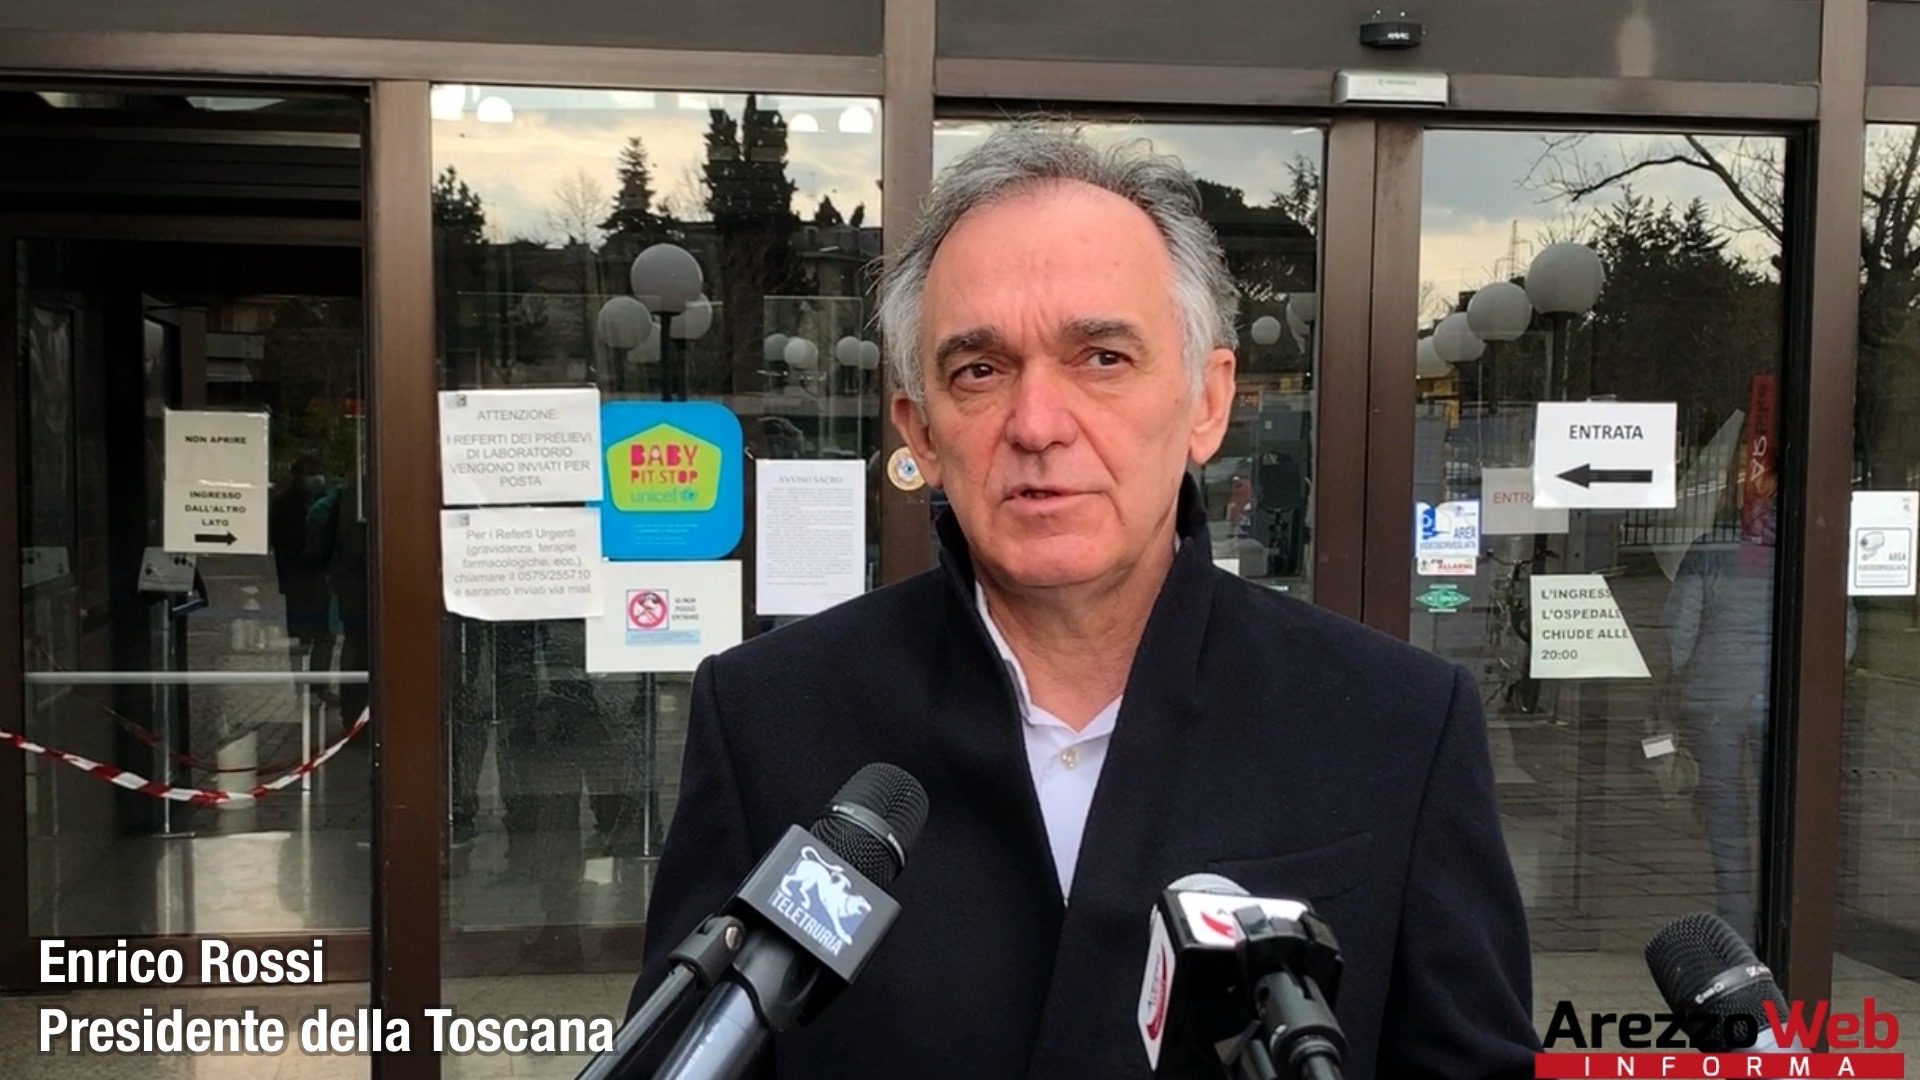 Nuove disposizioni del Presidente della Regione Toscana. Per Pasqua e Pasquetta i negozi rimangono chiusi